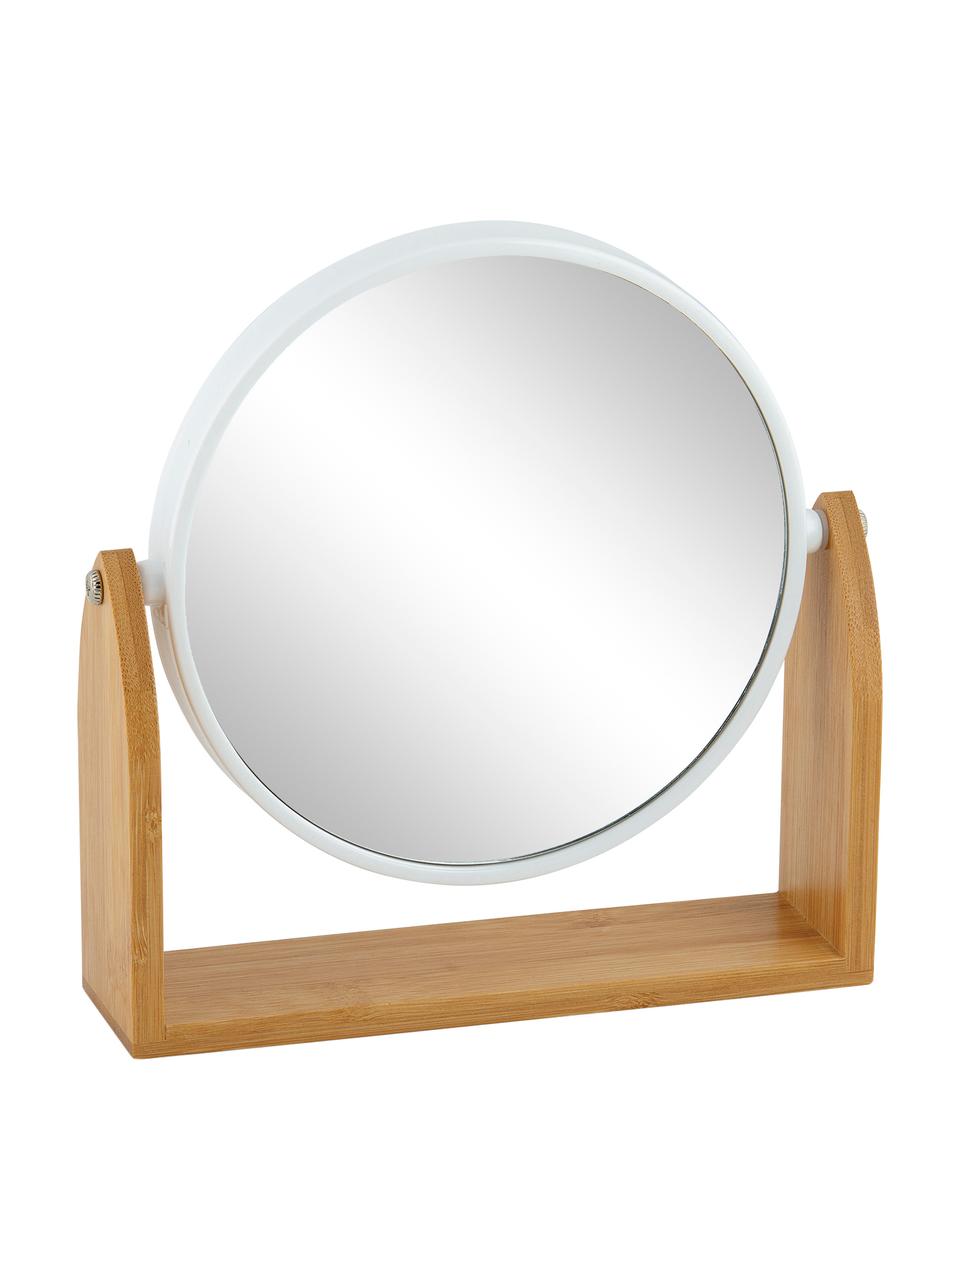 Kosmetikspiegel Bow, Rahmen: Bambus, Metall, Spiegelfläche: Spiegelglas, Braun, 19 x 18 cm